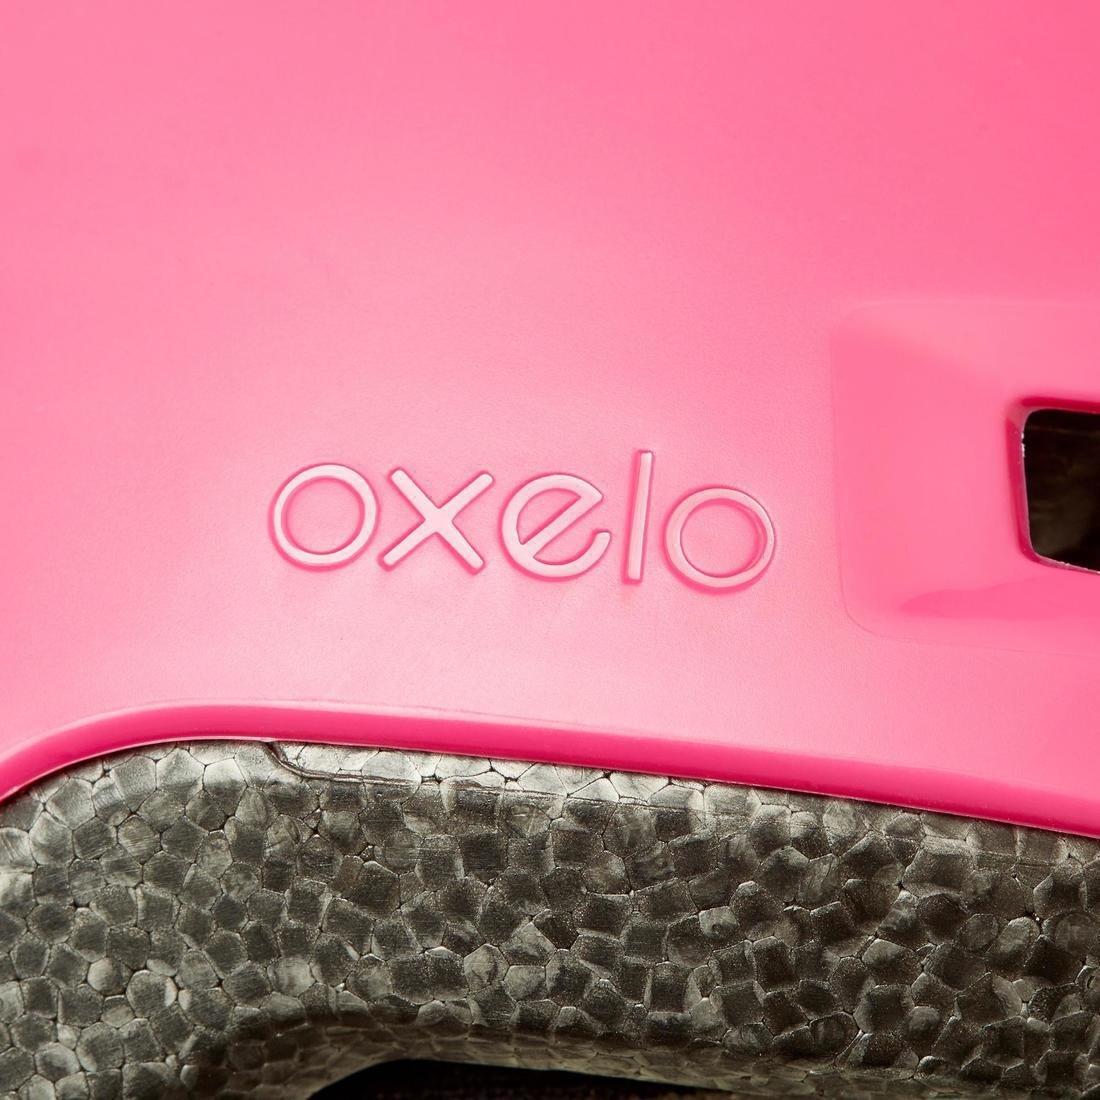 OXELO - Kids Inline Skating Skateboard Scooter Helmet B100, Pink